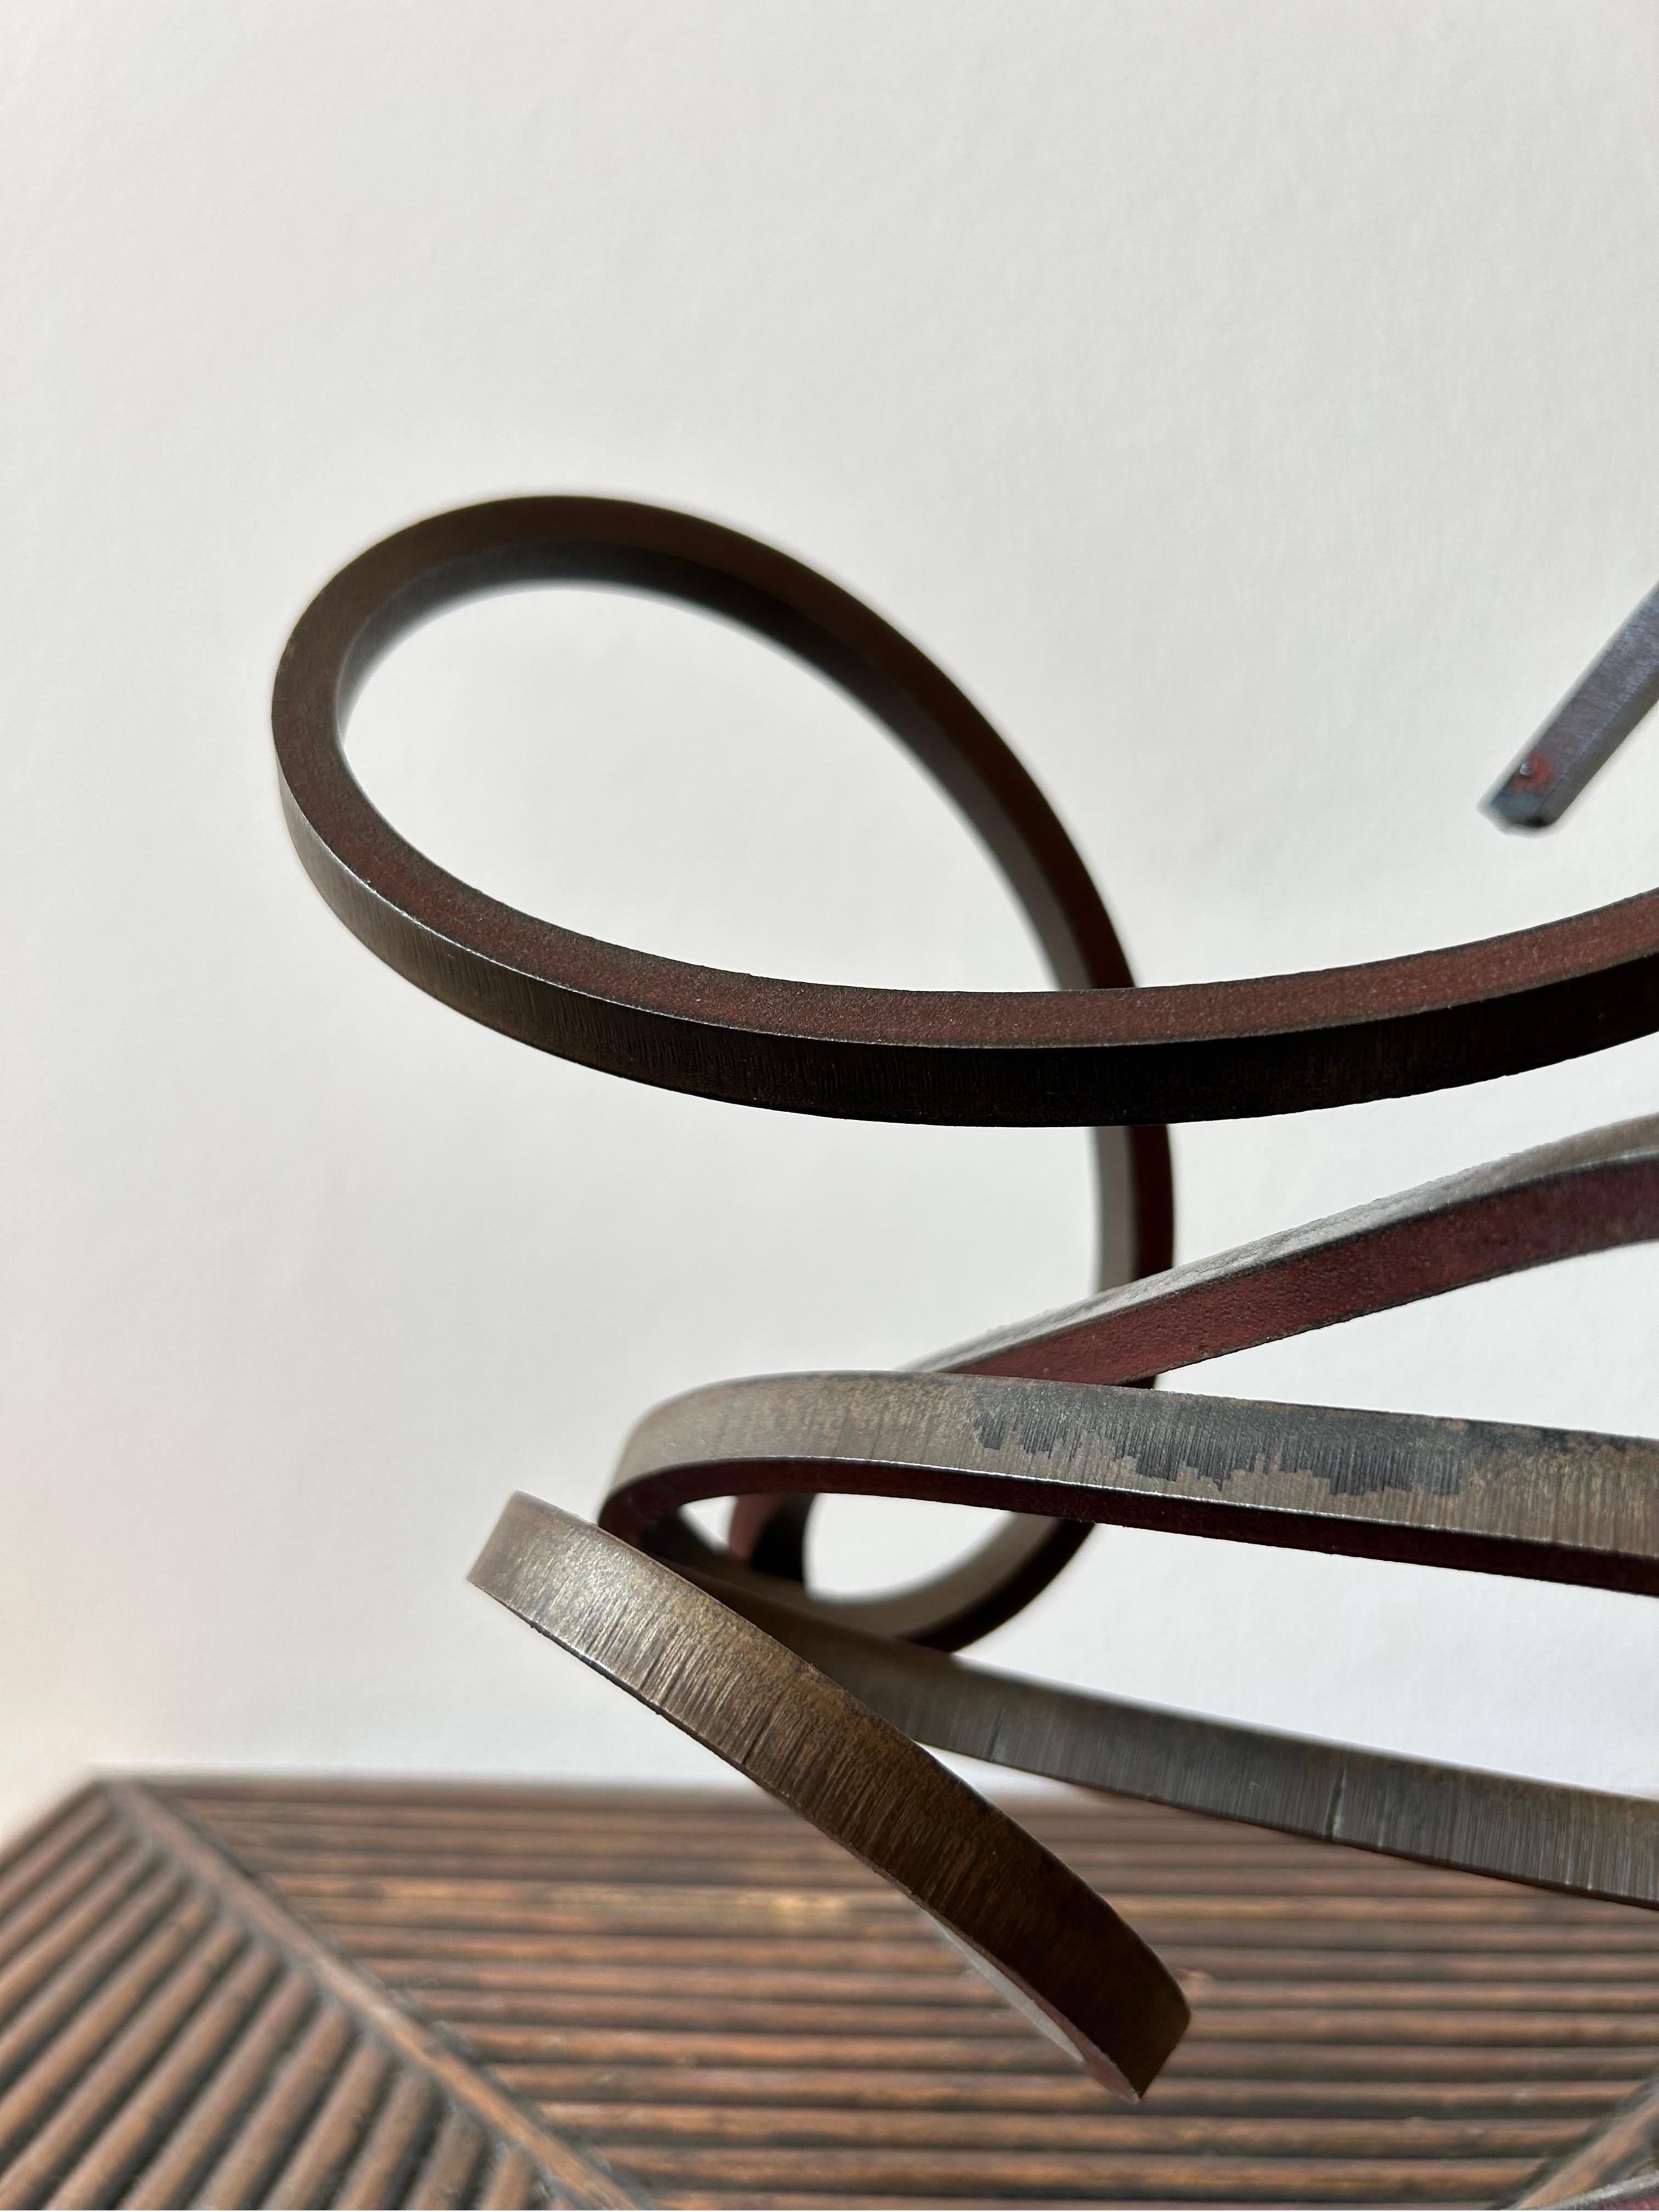 Seltene abstrakte Stahlskulptur, die in den 1960er Jahren in Dänemark von einem unbekannten dänischen Künstler geschaffen wurde.
Die Skulptur ist aus Gusseisen gefertigt und hat im Laufe der Jahre eine schöne Patina bekommen.

Die Skulptur hat